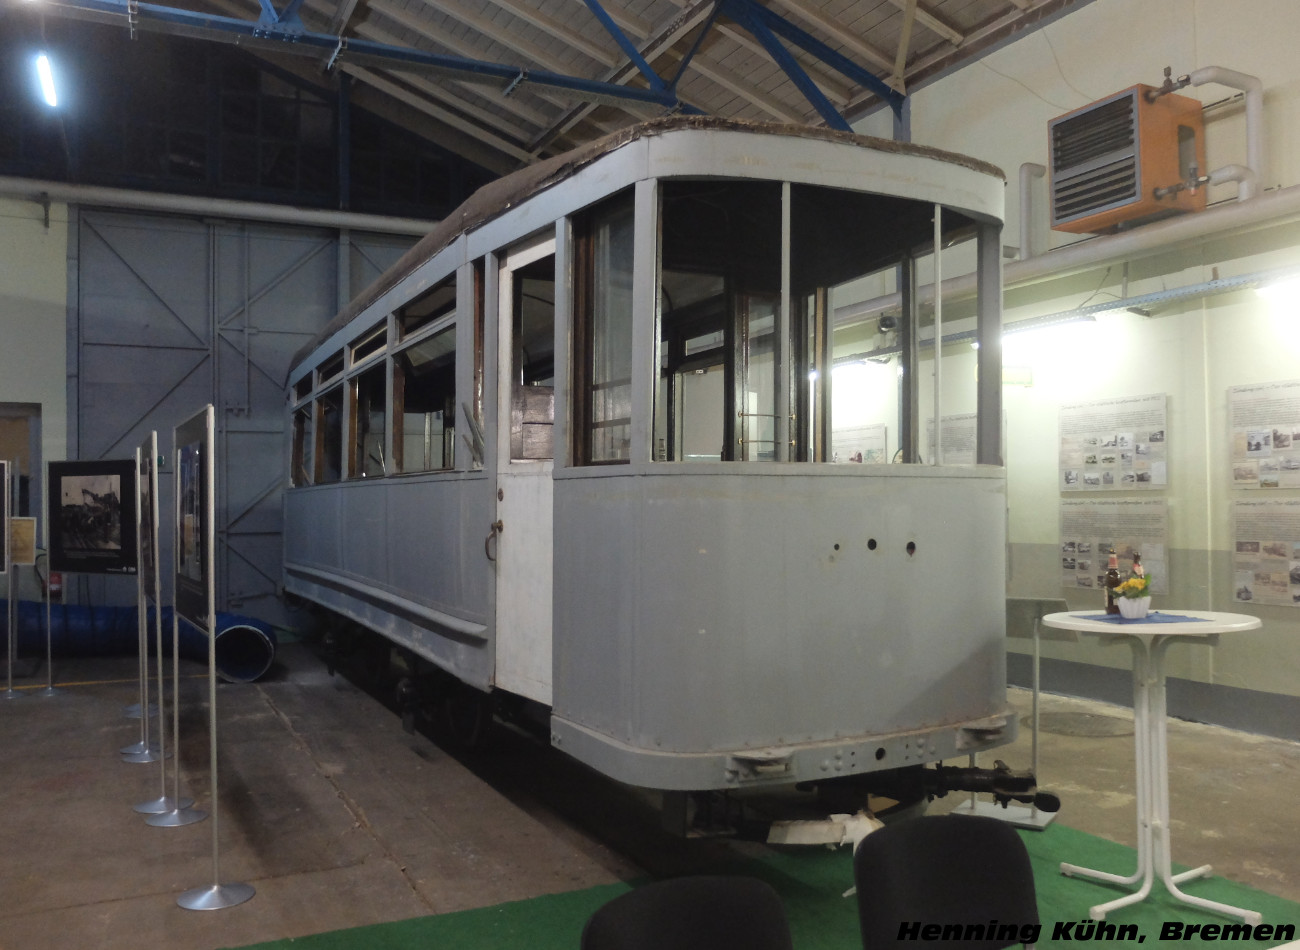 2-axle trailer tram #566